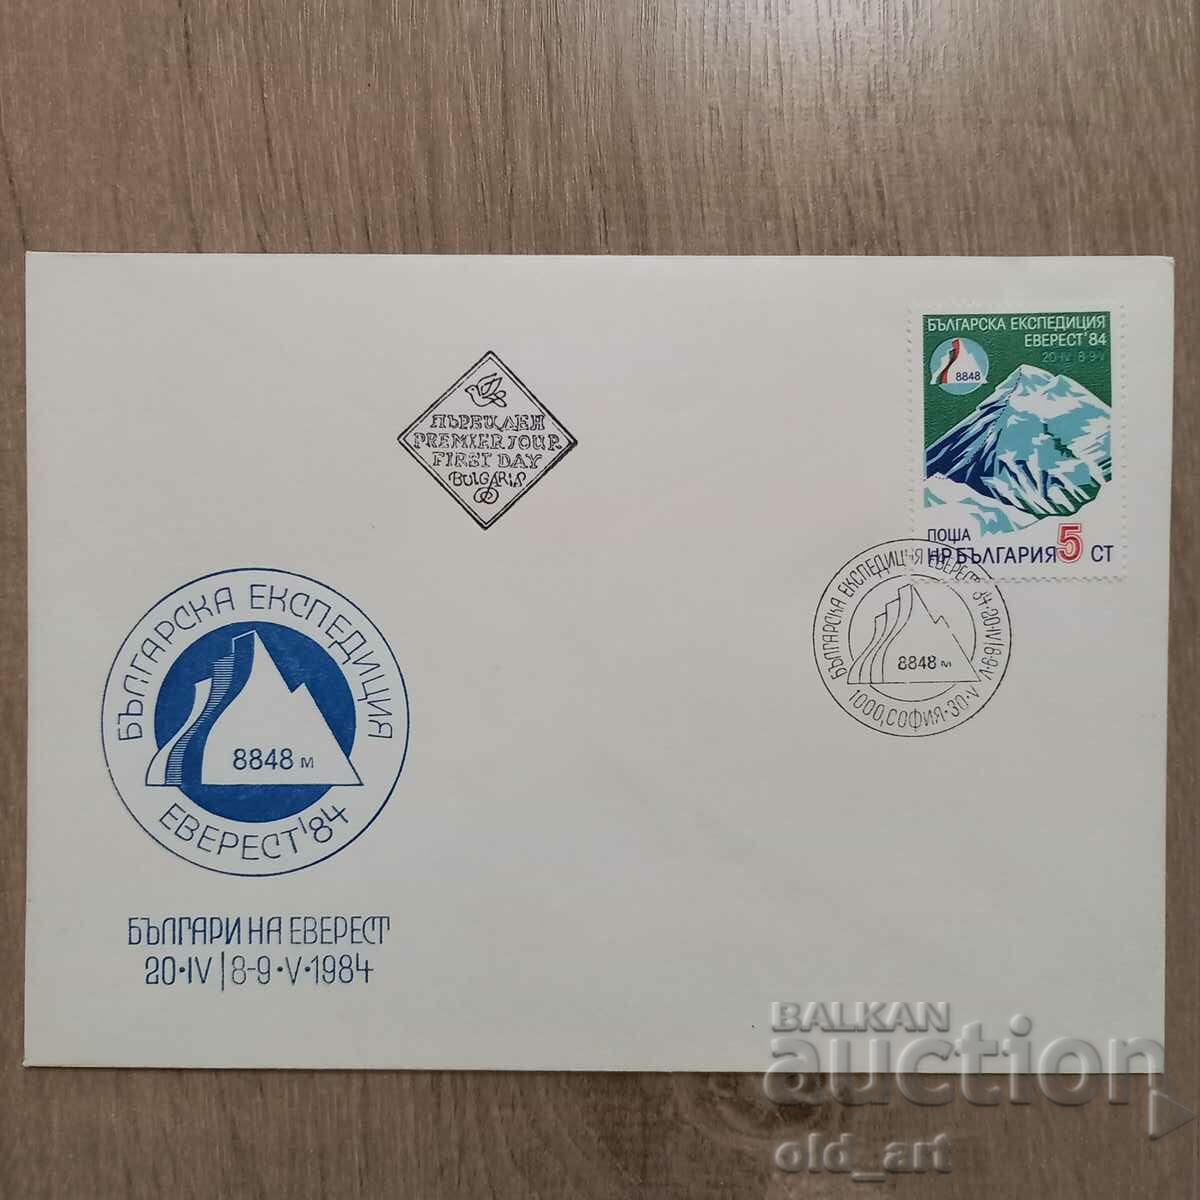 Plic poștal - Expediția bulgară Everest 84